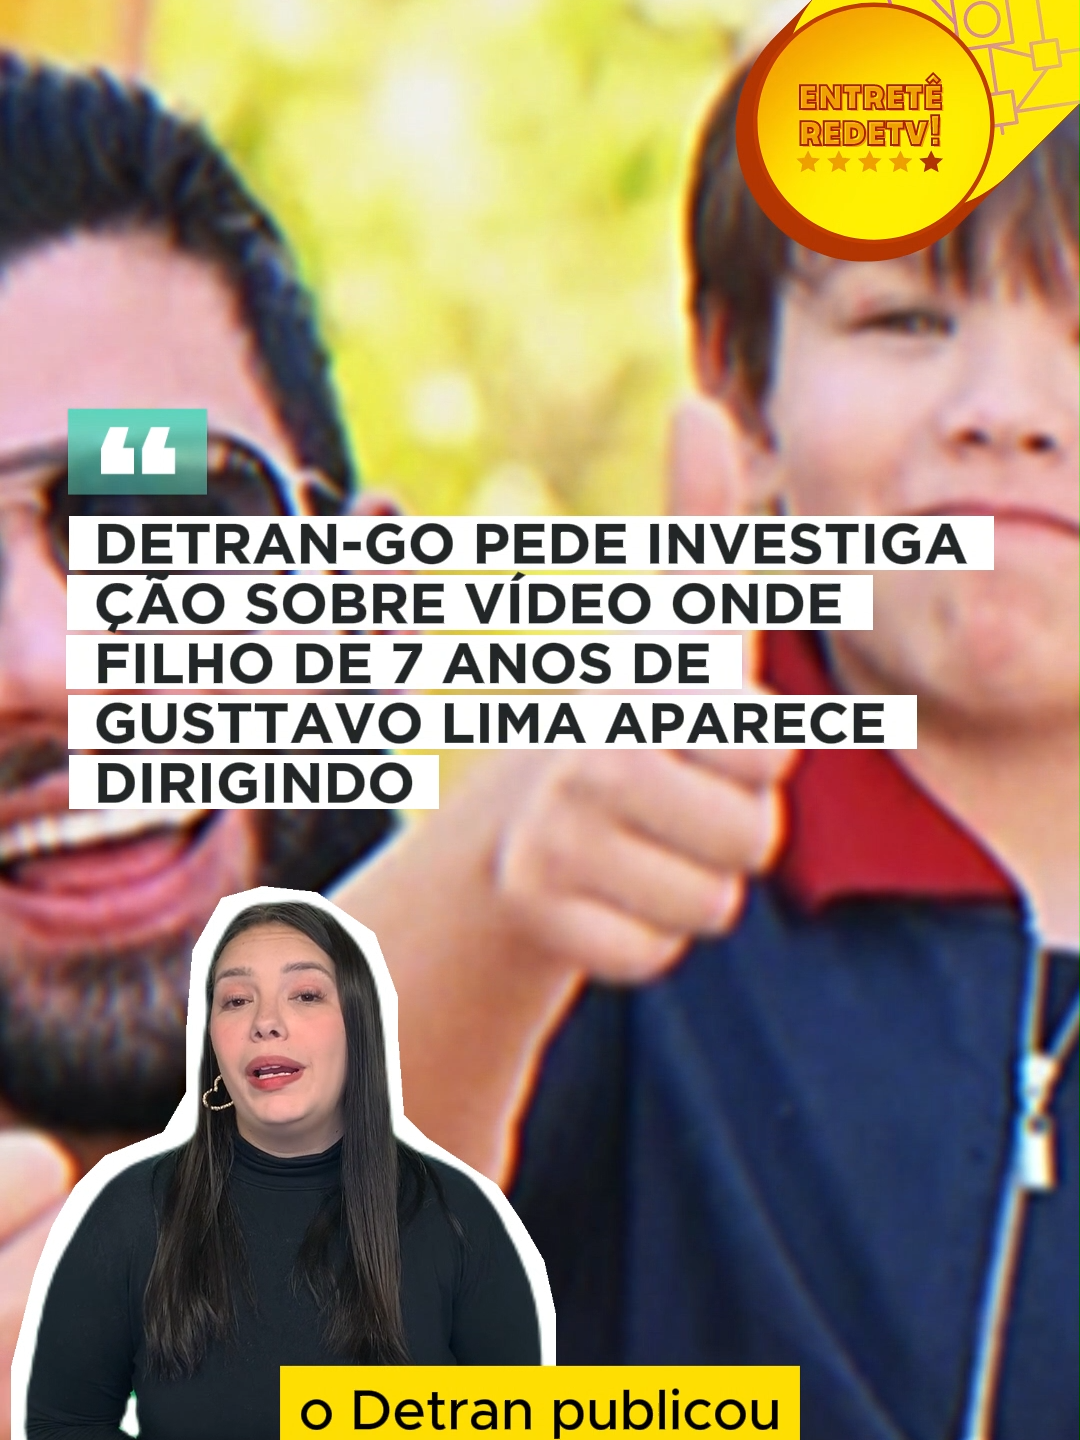 Detran-GO pede investigação sobre vídeo onde filho de 7 anos de Gusttavo Lima aparece dirigindo #redetv #noticias #polemicas #fofocas #celebridades #famosos #gusttavolima